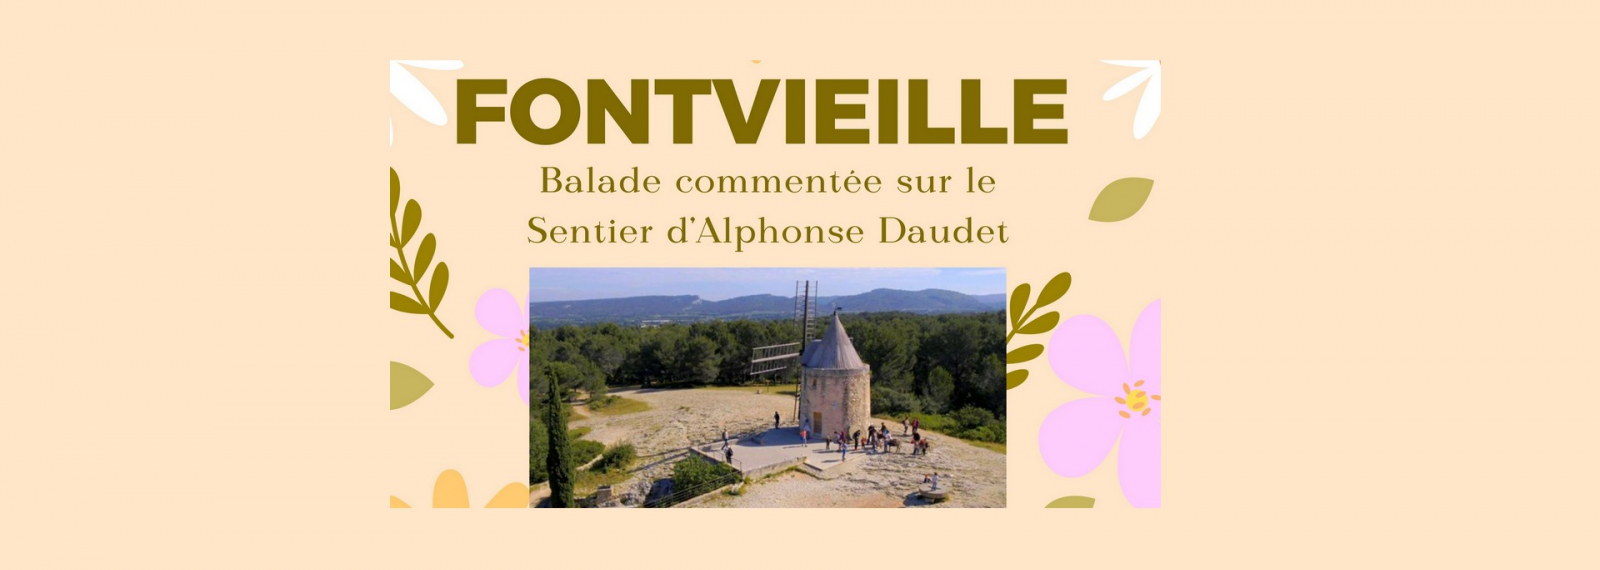 Kommentierte Wanderung im Eselschritt auf dem Sentier des Moulins d'Alphonse Daudet